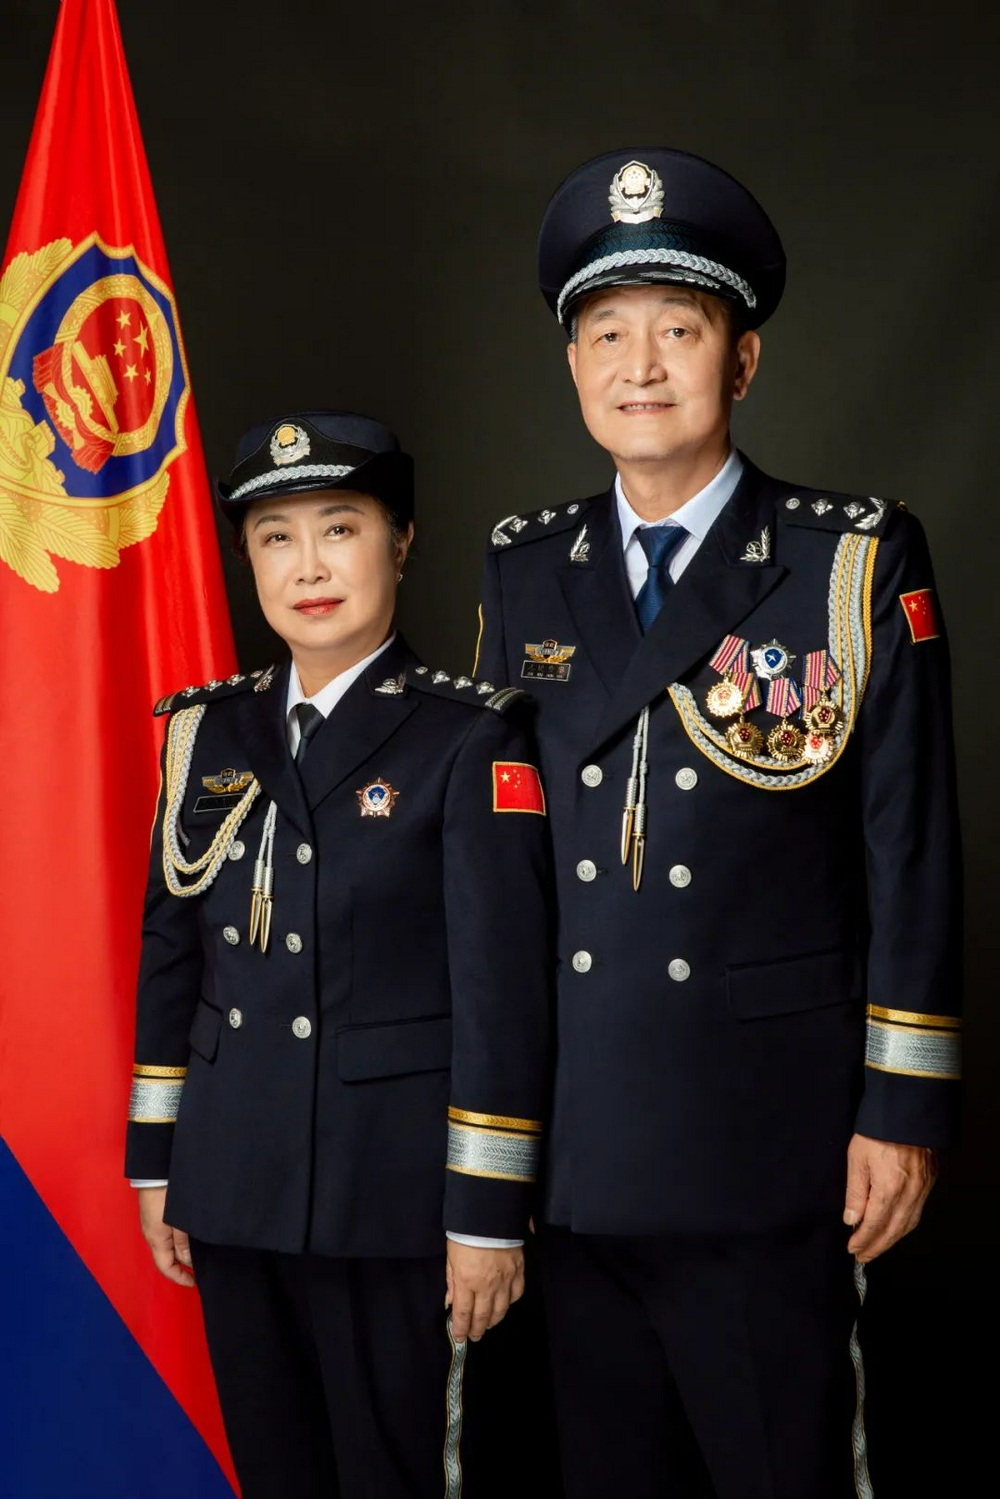 两江公安组织离退休民警拍摄警礼服纪念照